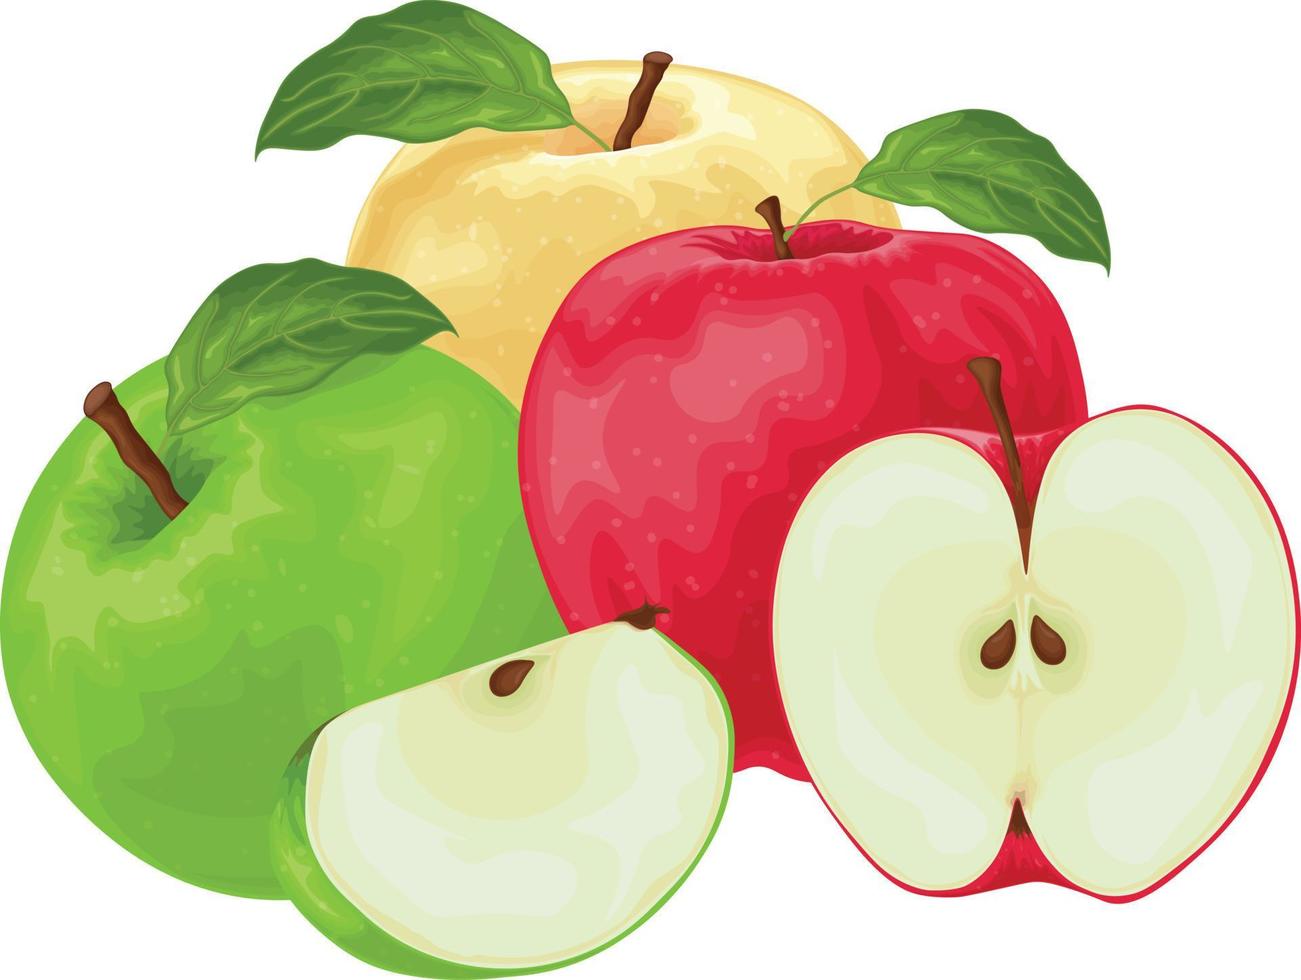 maçãs. uma imagem de maçãs de cores diferentes. maçã verde e amarela vermelha. uma coleção de três maçãs. ilustração vetorial isolada em um fundo branco vetor